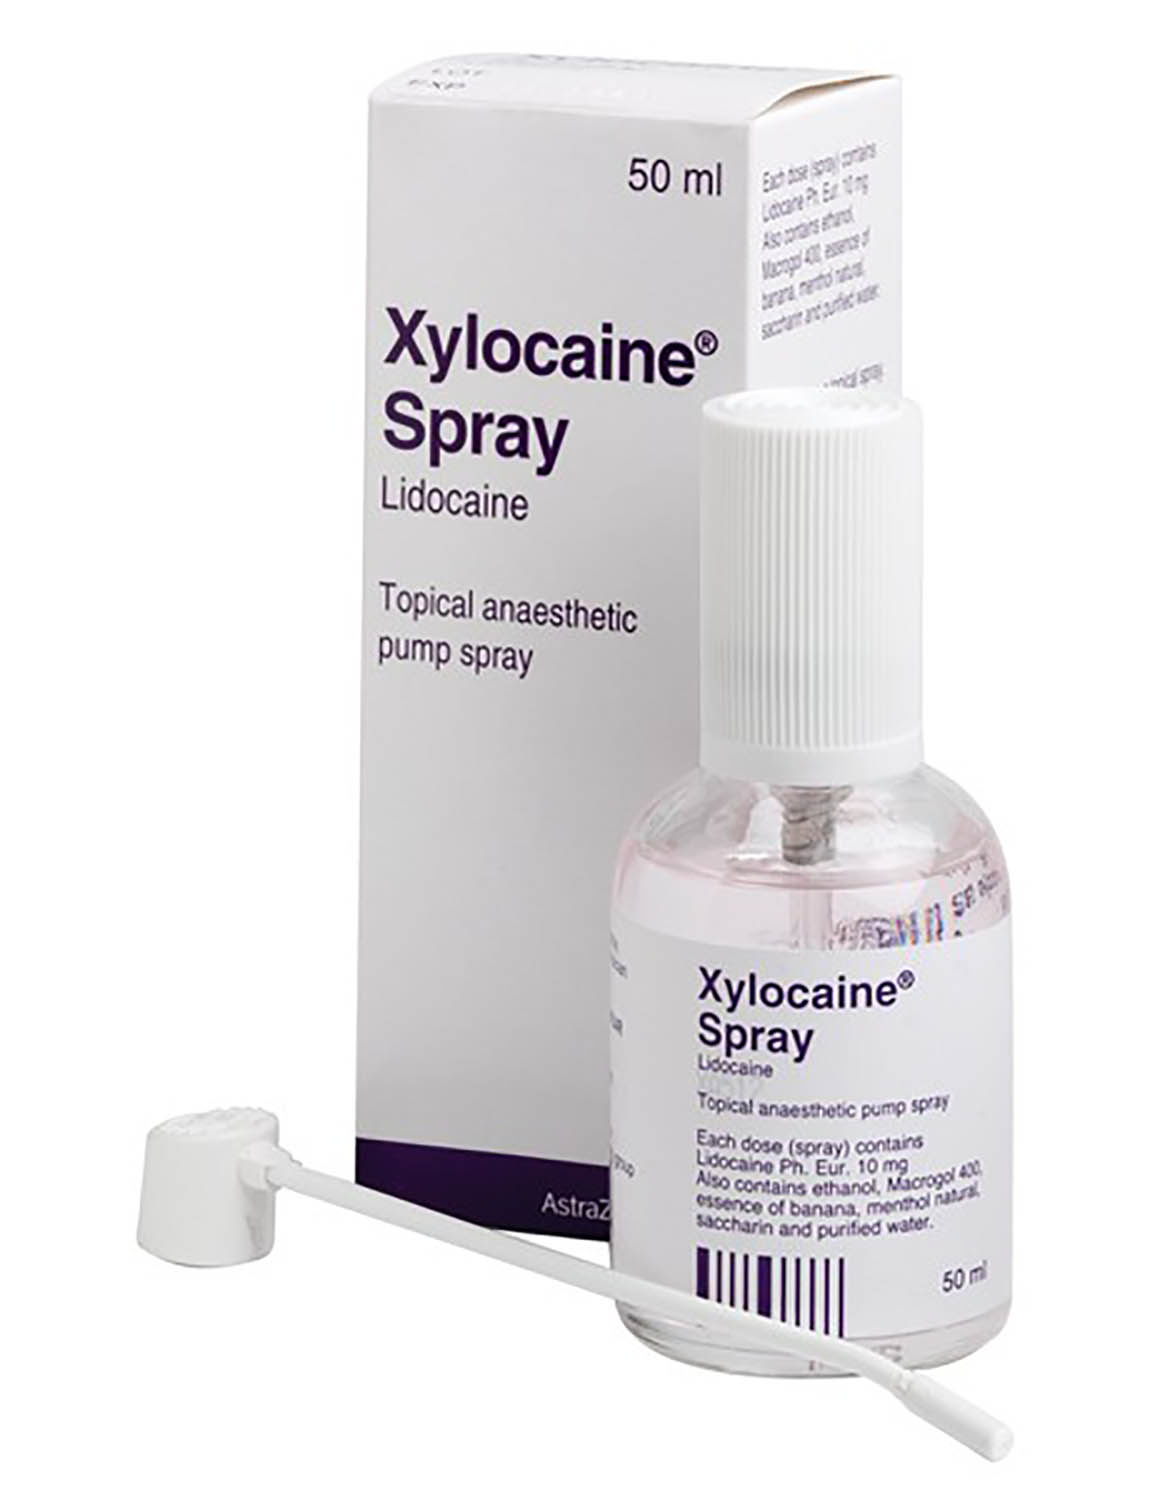 Xylocaine 10% Pump Spray 50ml